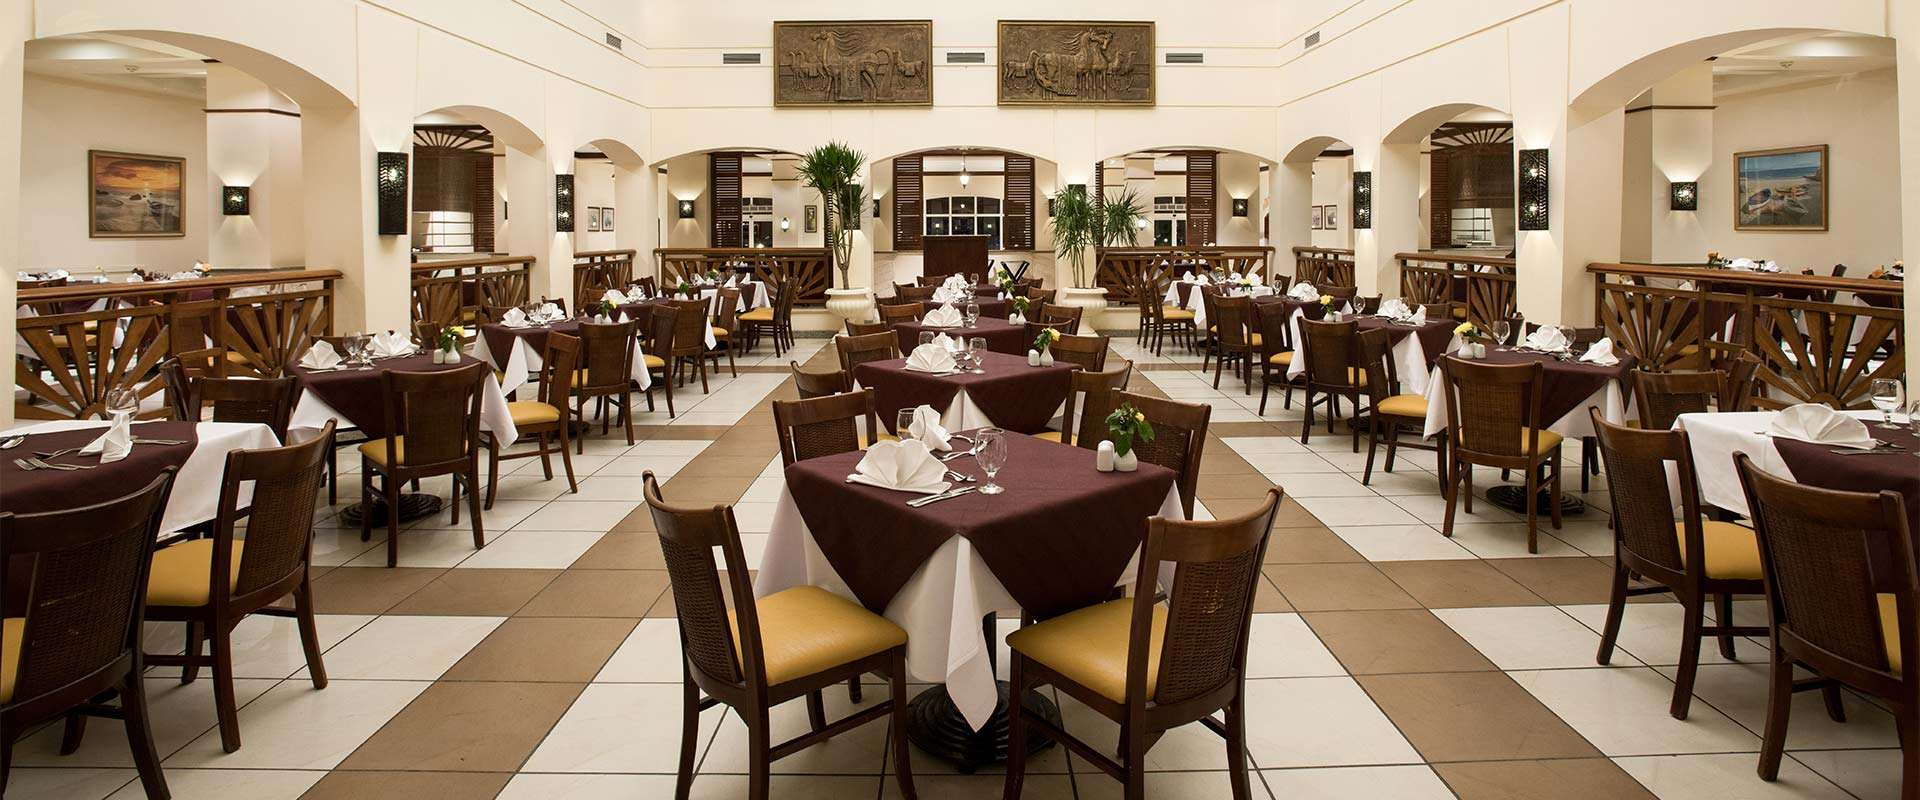 Main Restaurant - Indoor